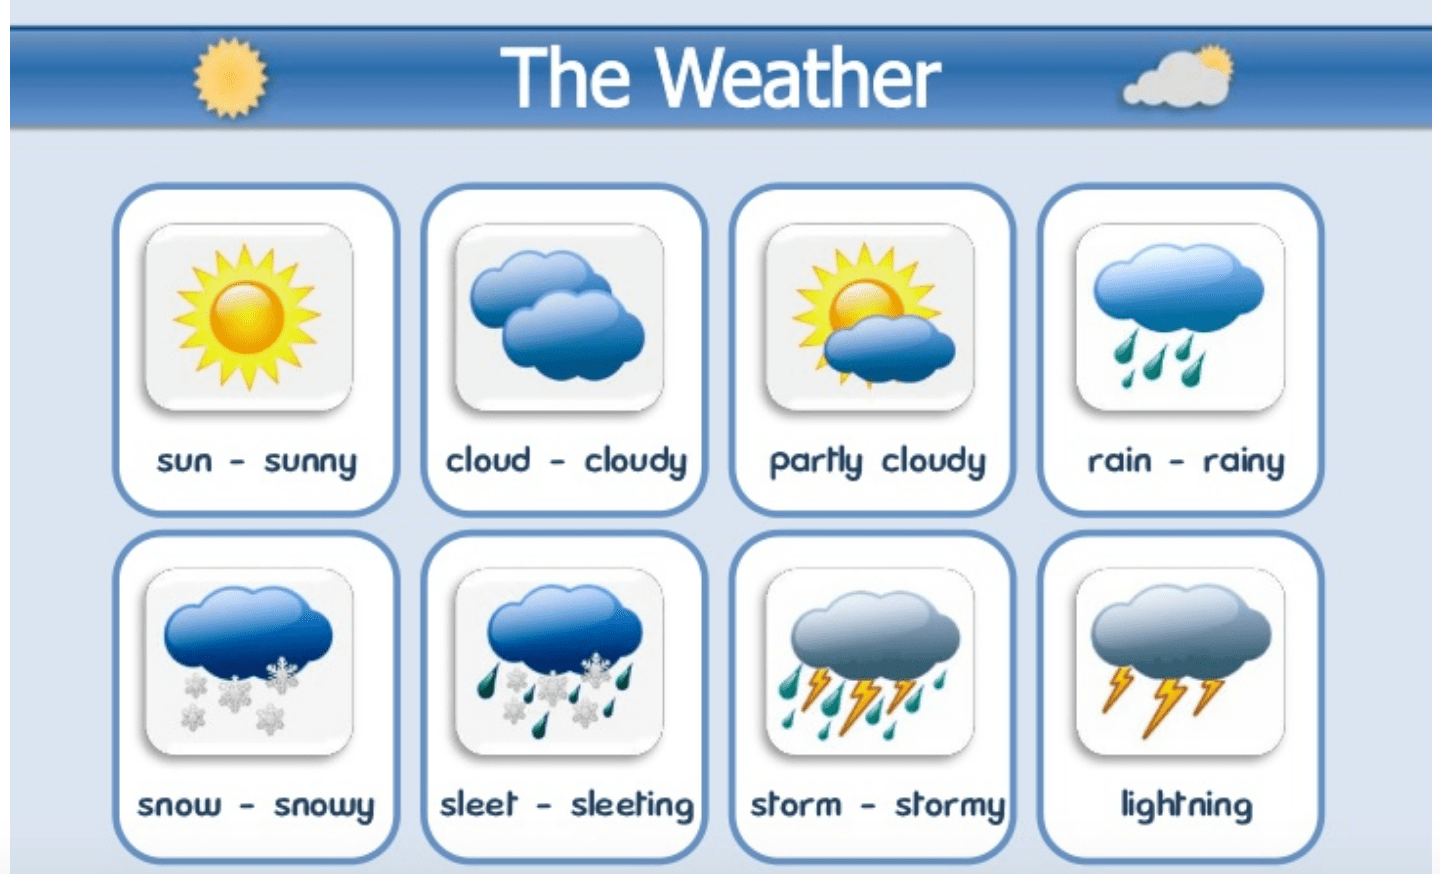 Картинка weather. Погода на английском языке. Карточки weather для детей. Gjujlf ZF fzukbqcrjv. Weather английский язык.